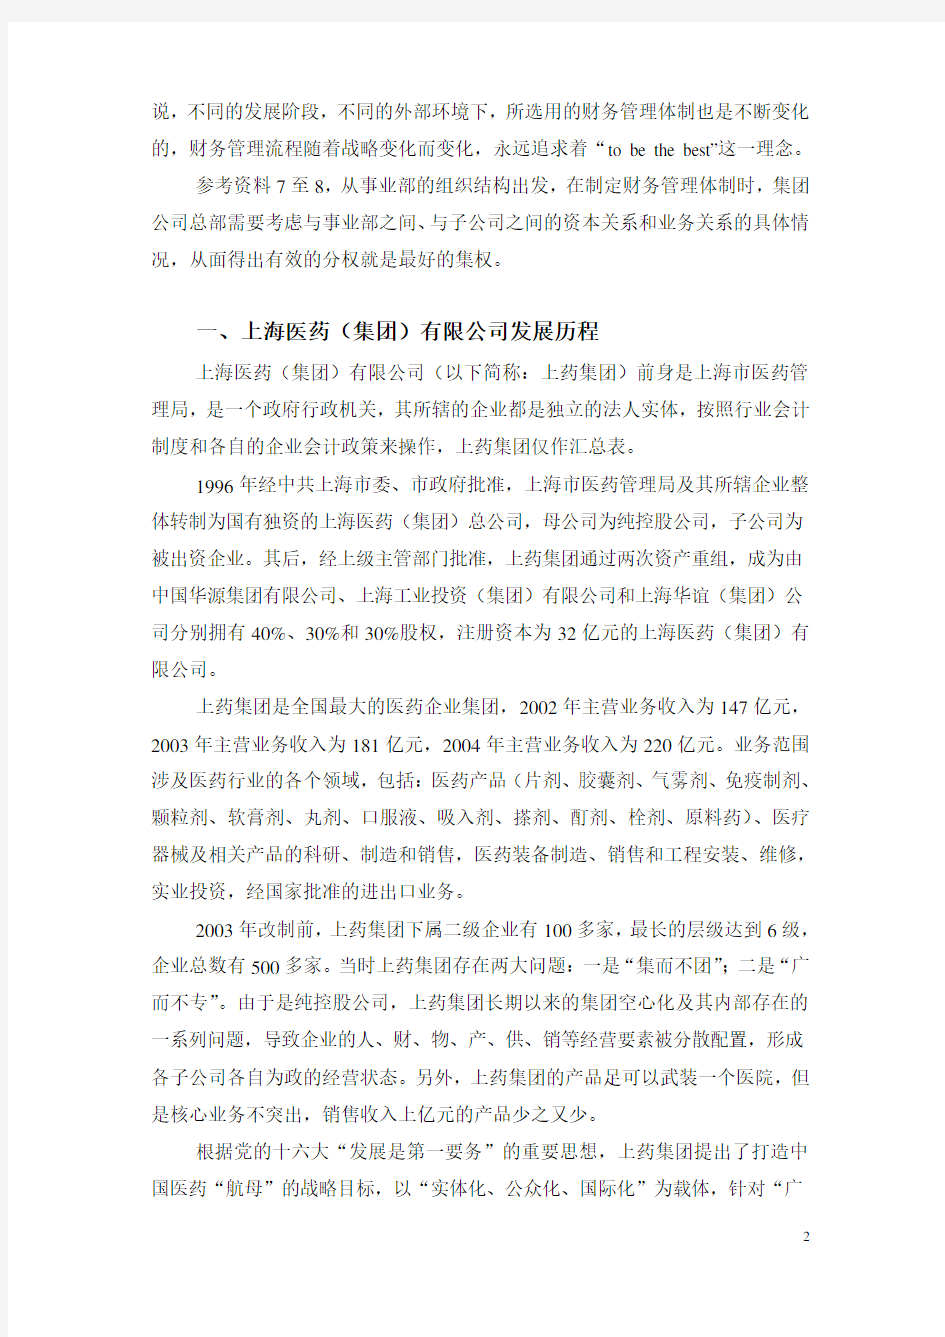 上海医药(集团)有限公司事业部制下财务管理模式的探讨